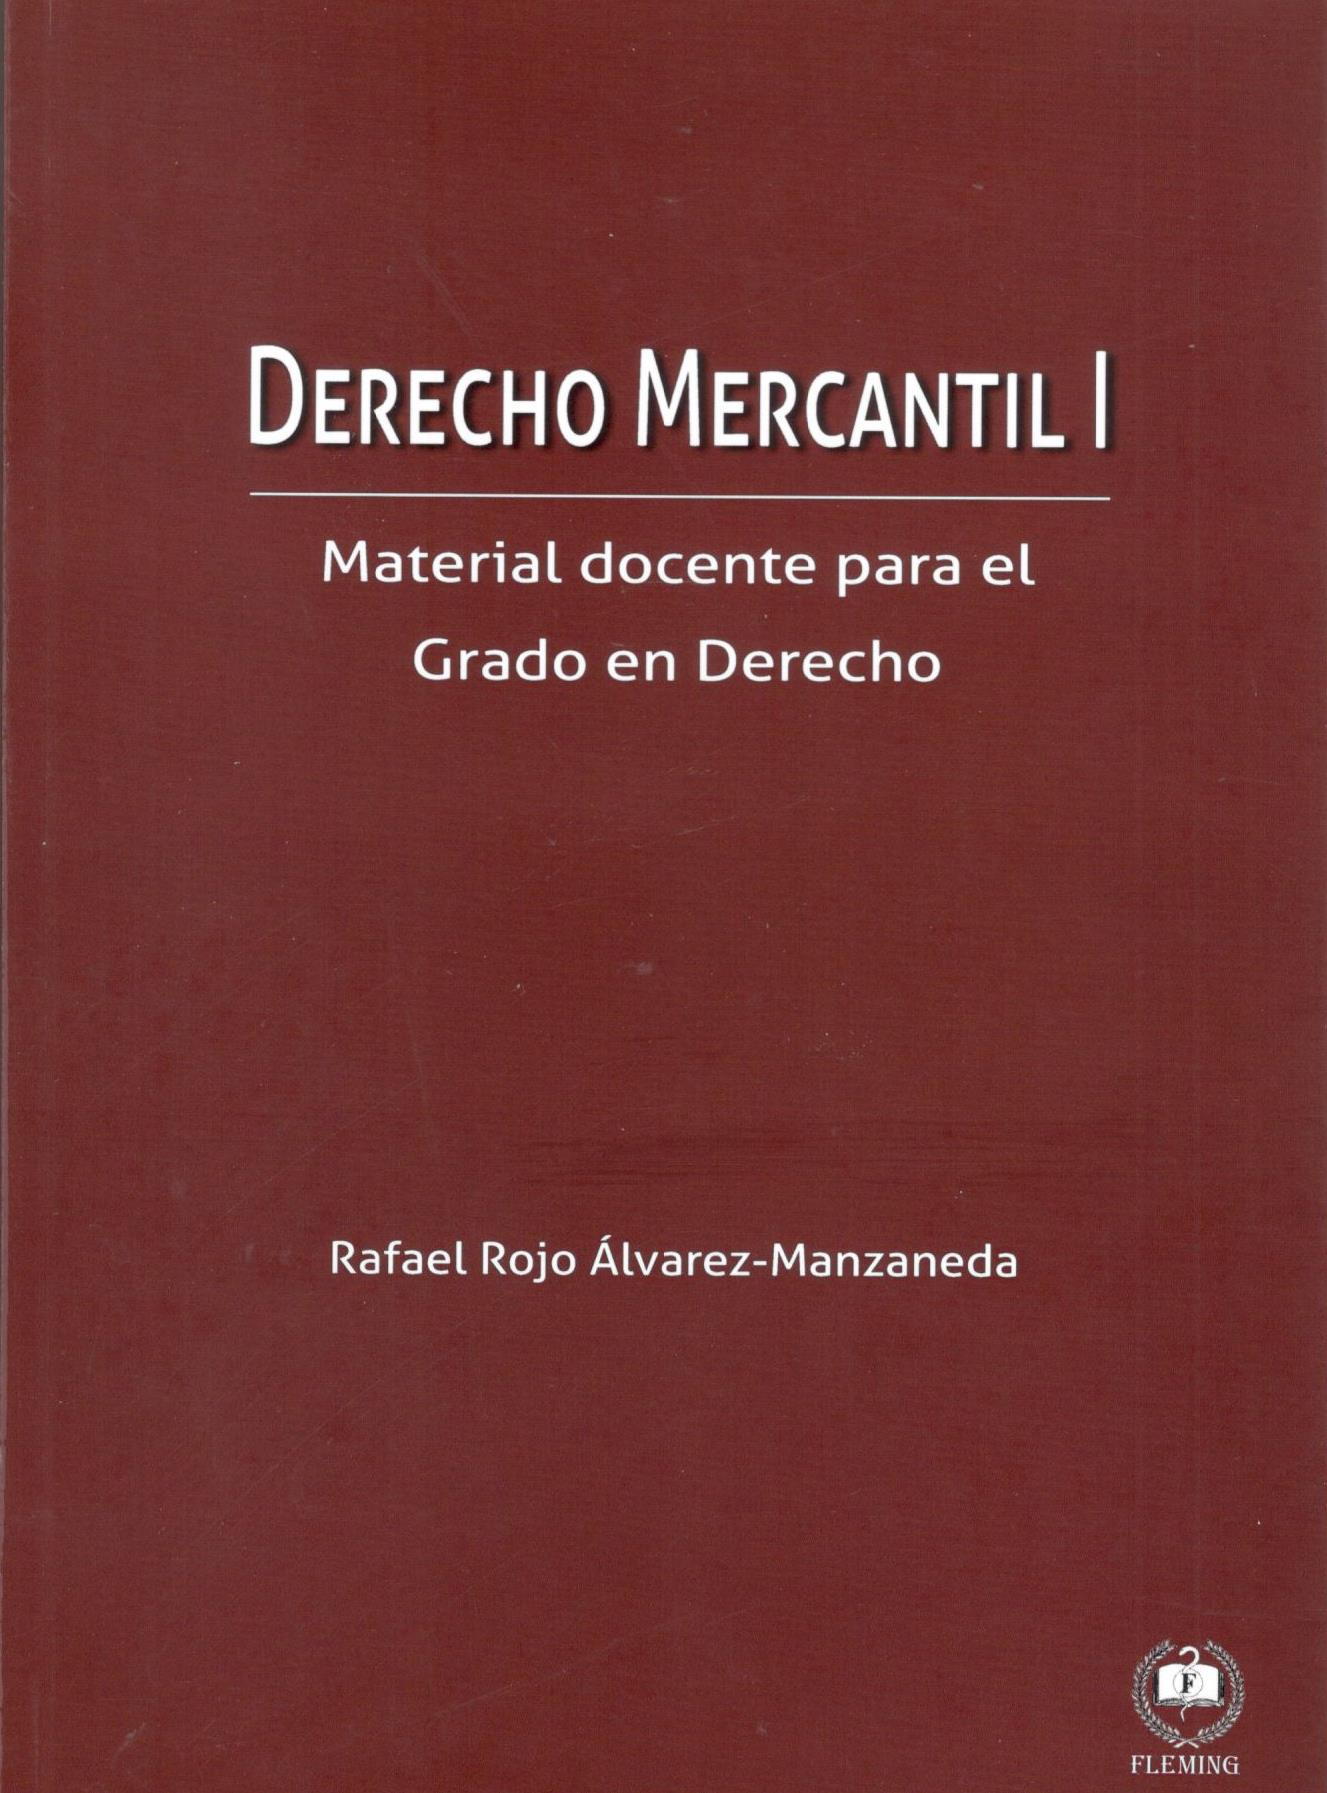 DERECHO MERCANTIL I. MATERIAL DOCENTE PARA EL GRADO EN DERECHO